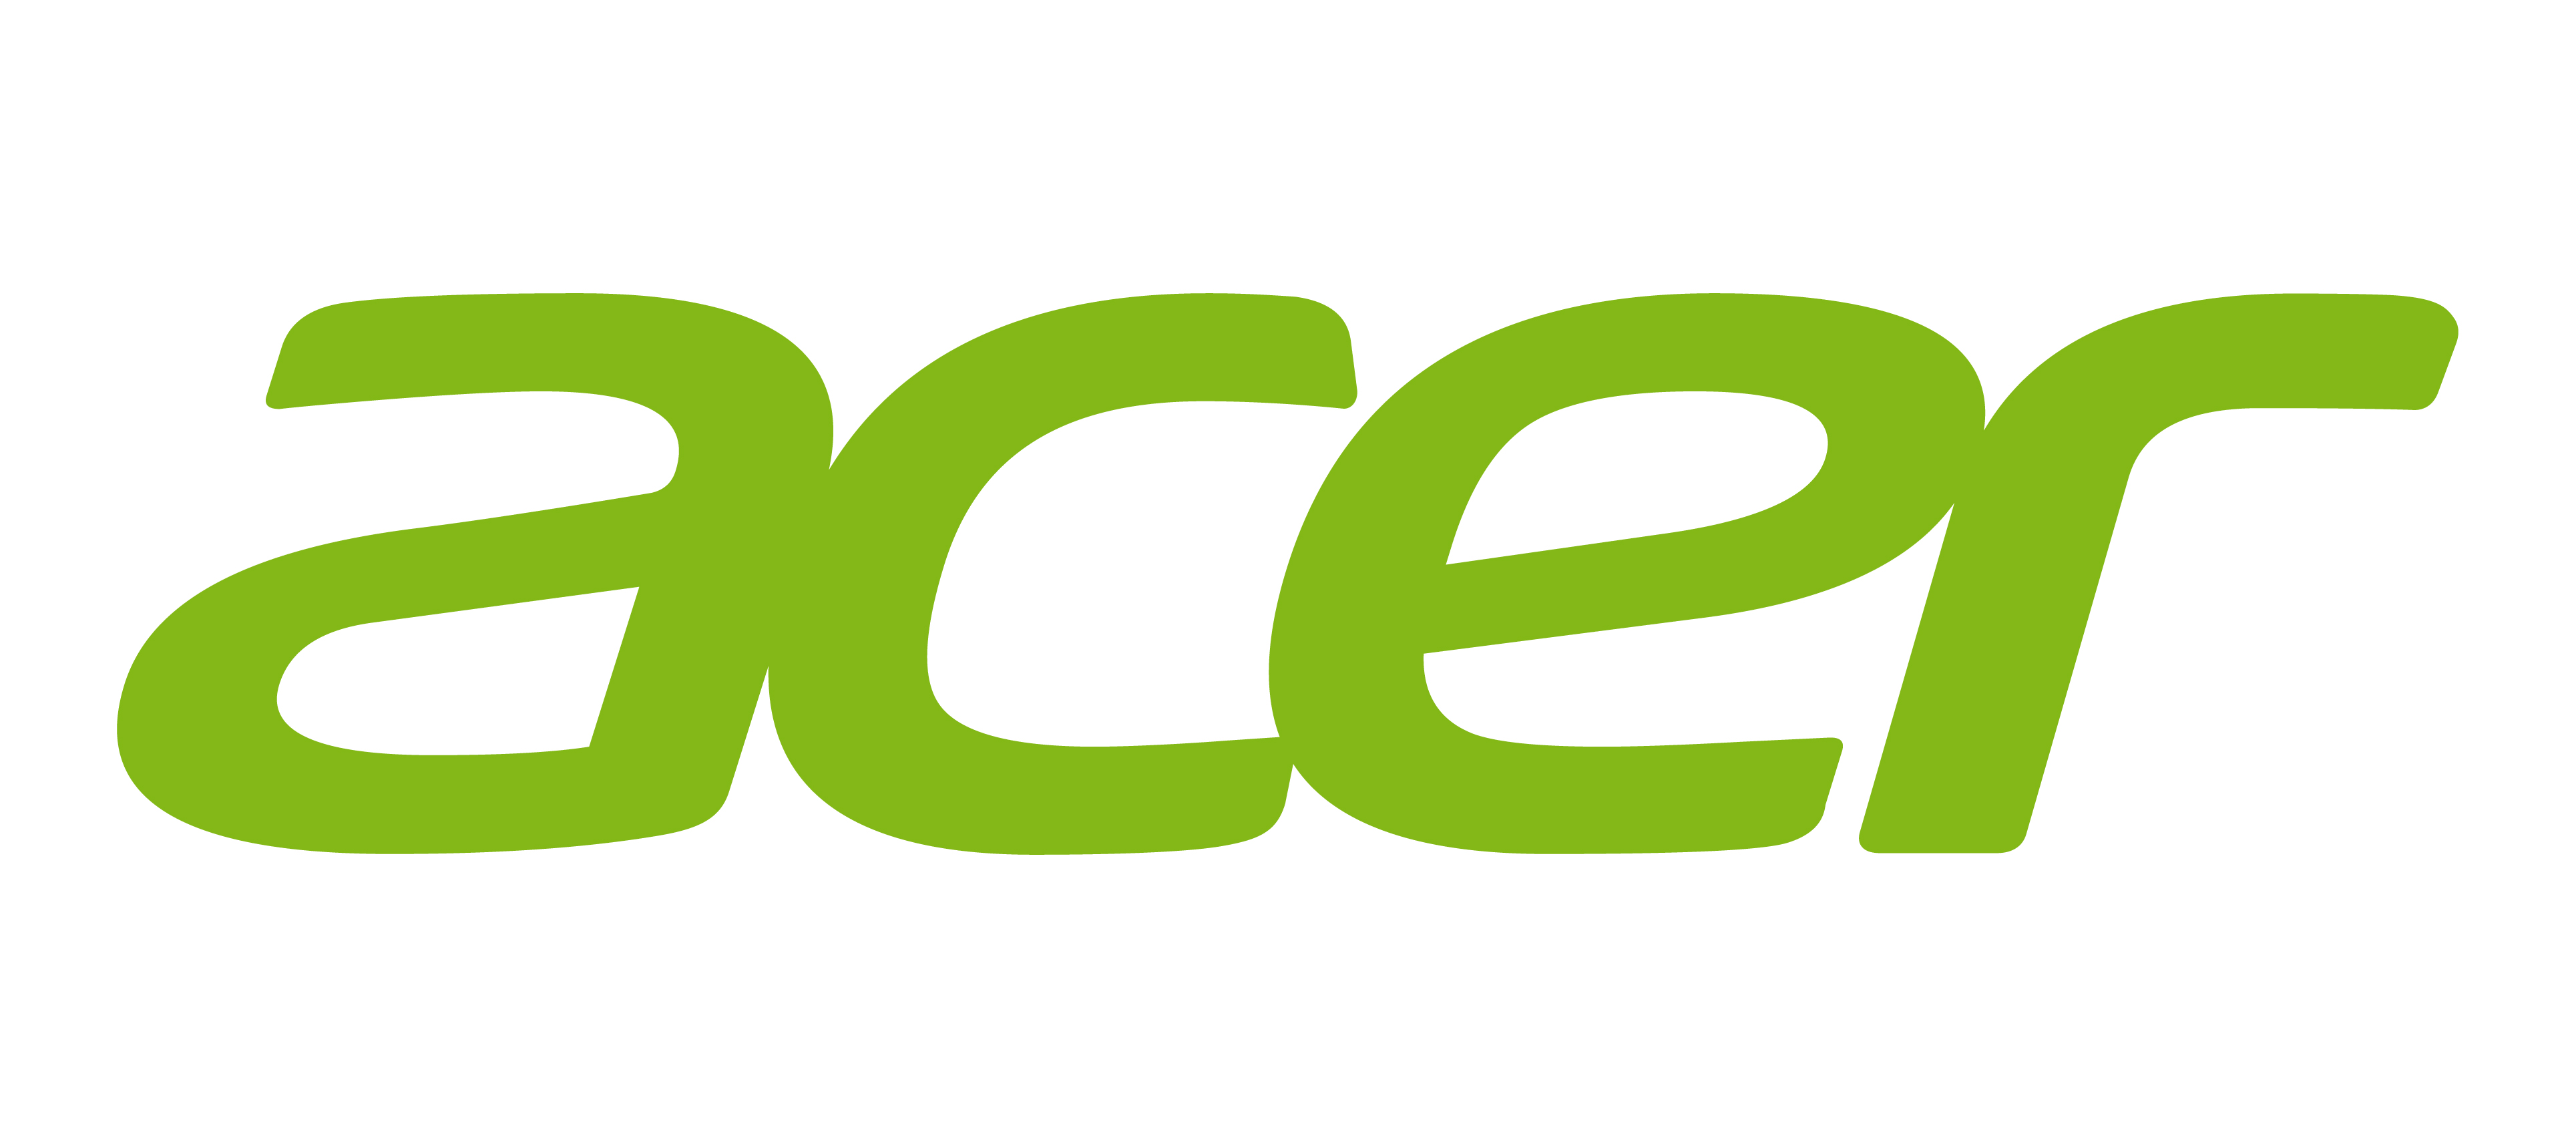 Acer odświeżył logo